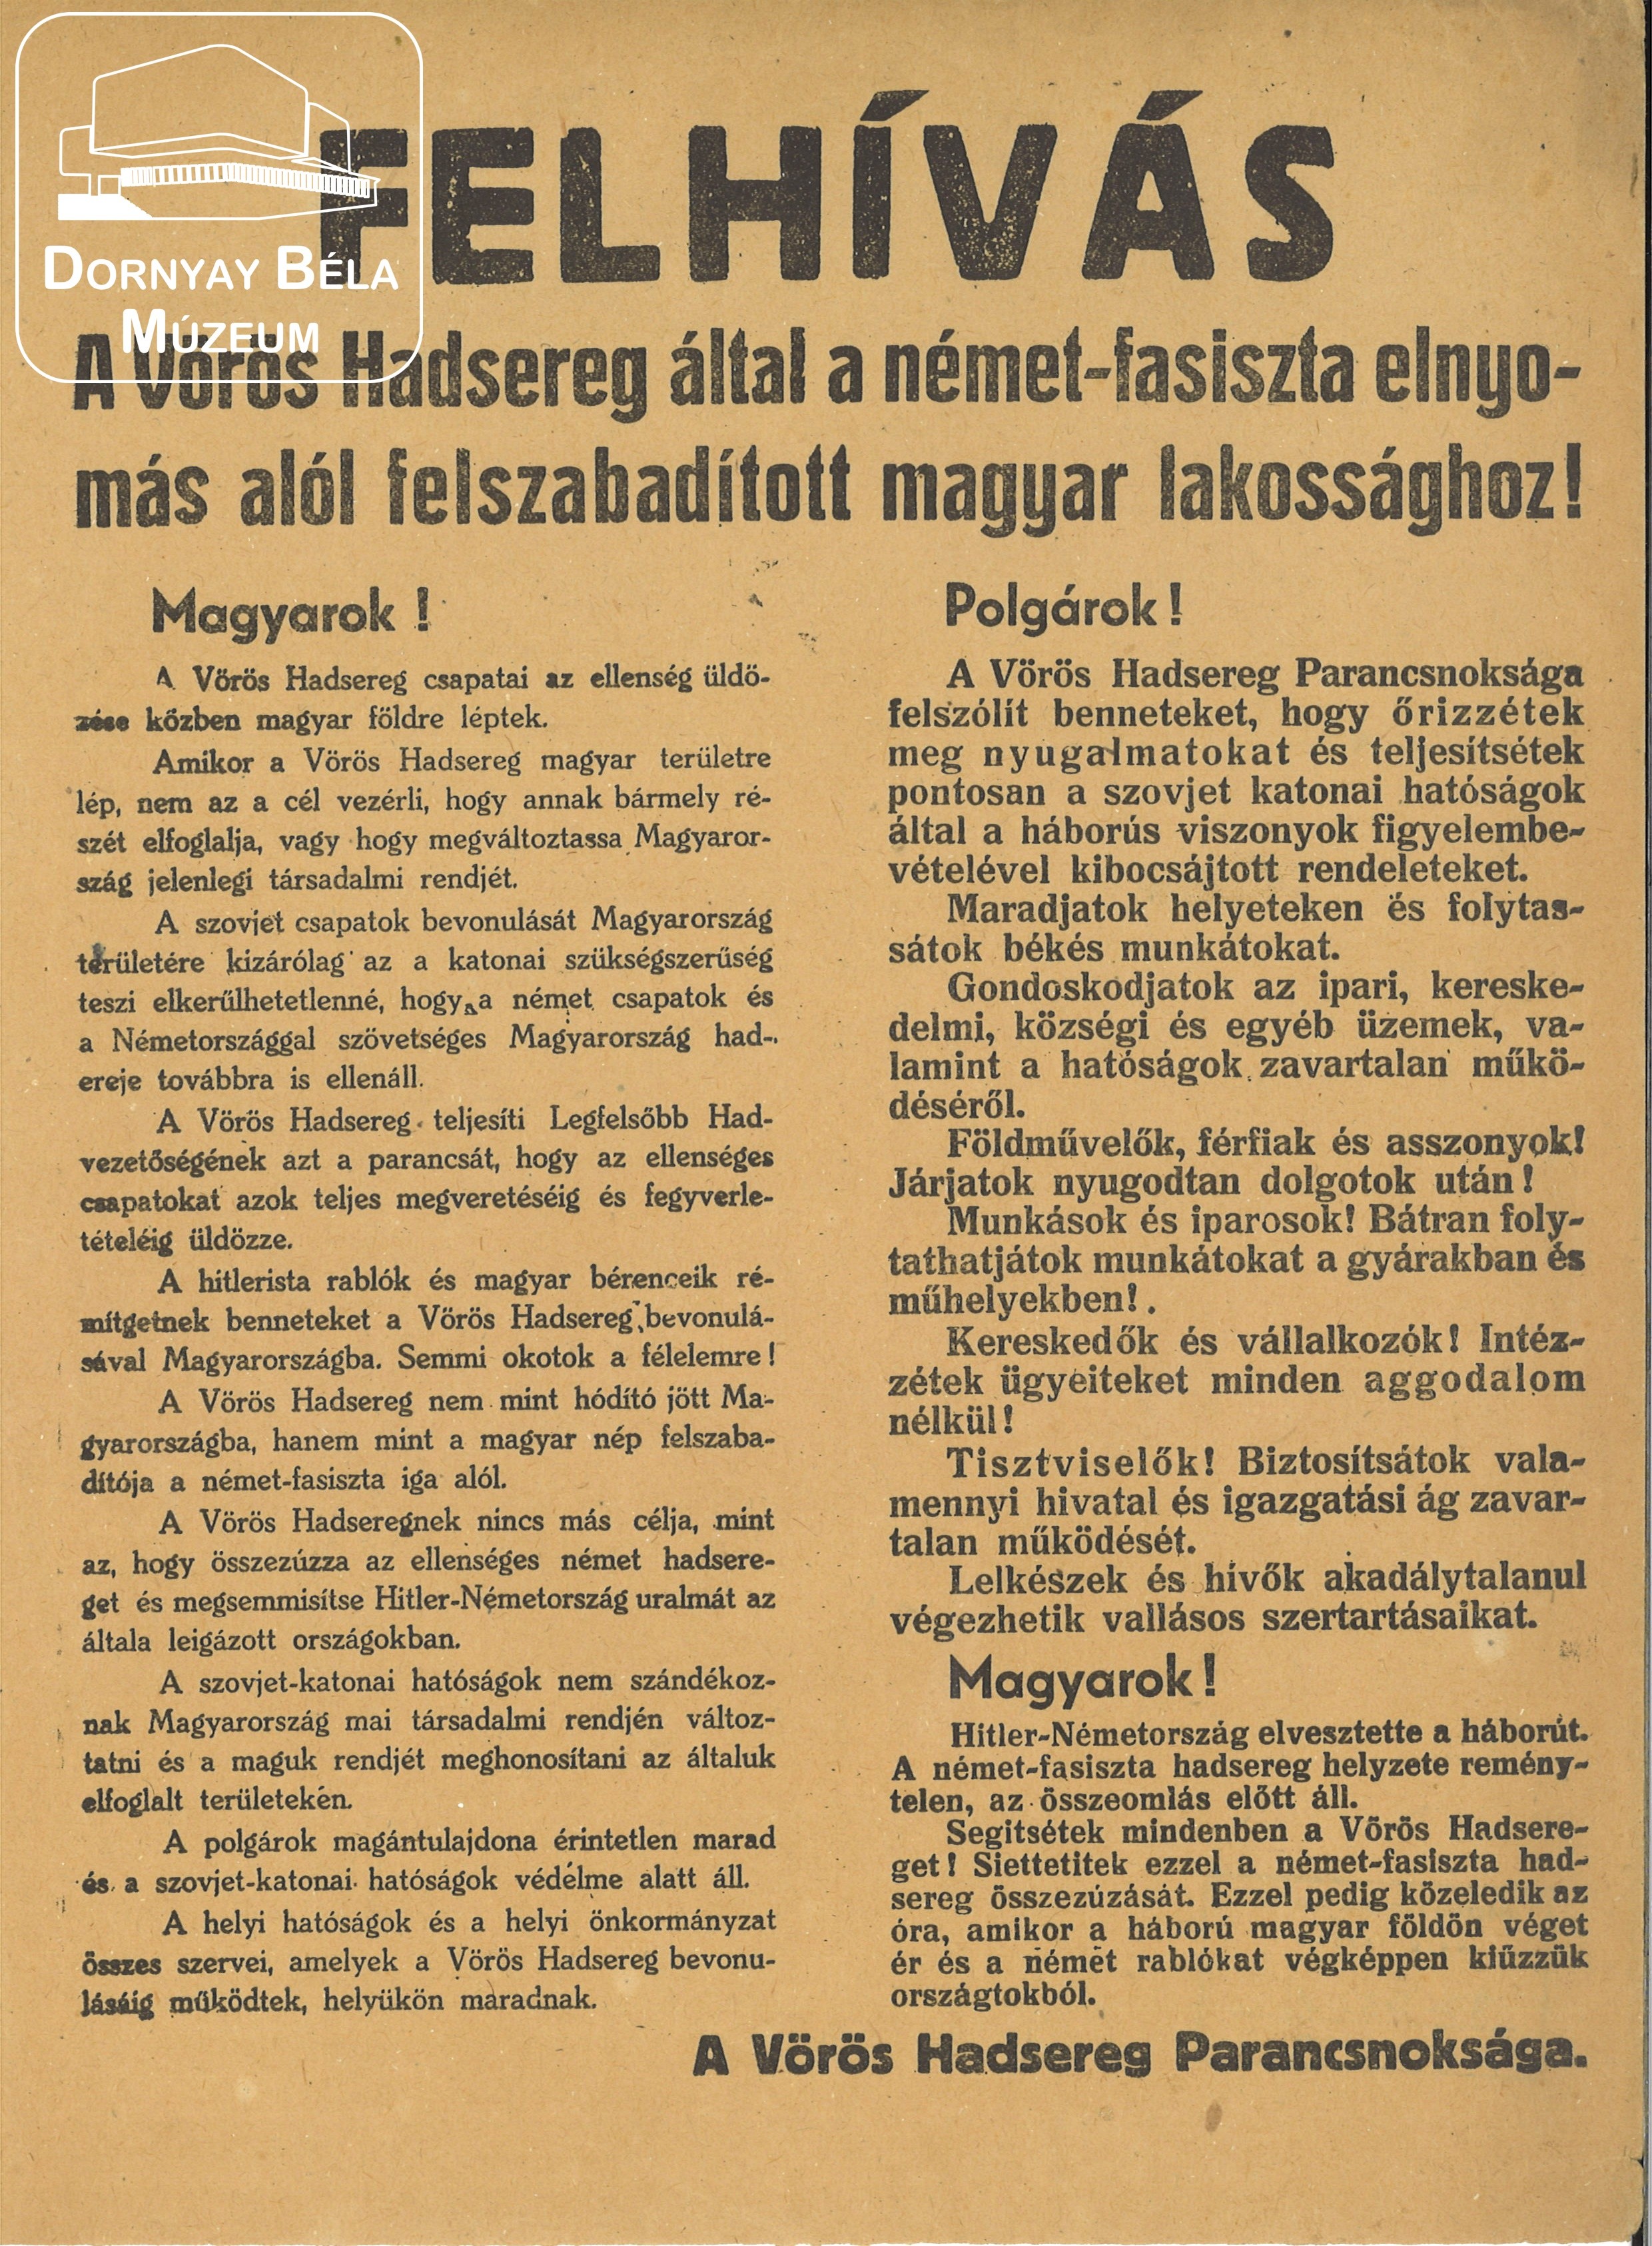 Felhívás a Vörös Hadsereg által a német fasiszta elnyomás alól felszabadított magyar lakossághoz. (Dornyay Béla Múzeum, Salgótarján CC BY-NC-SA)